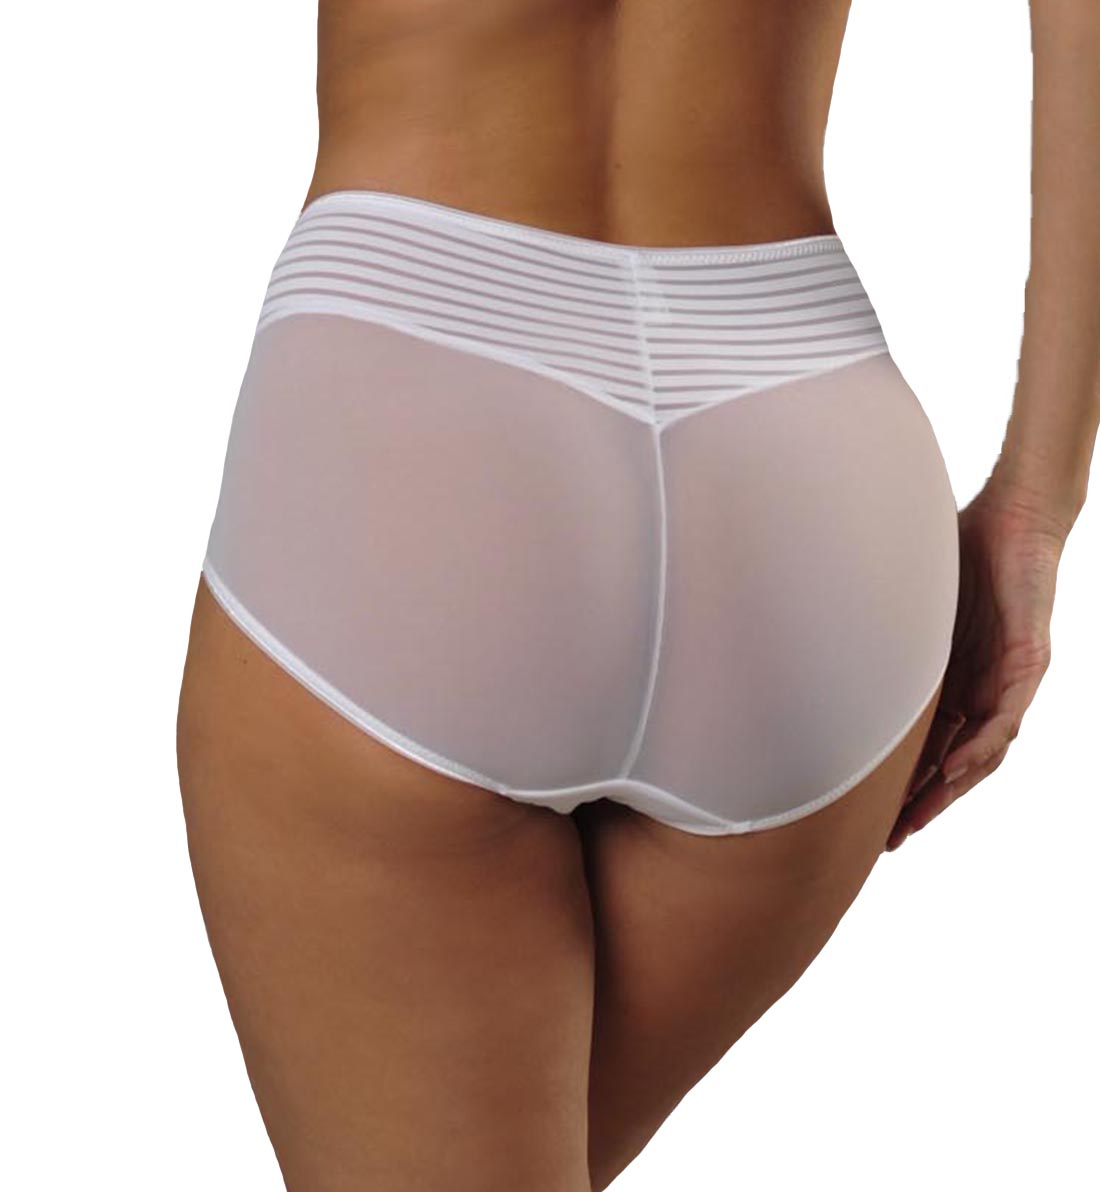 Comexim Gloria Matching Panty (CMGLORIAMP),Medium,White - White,Medium